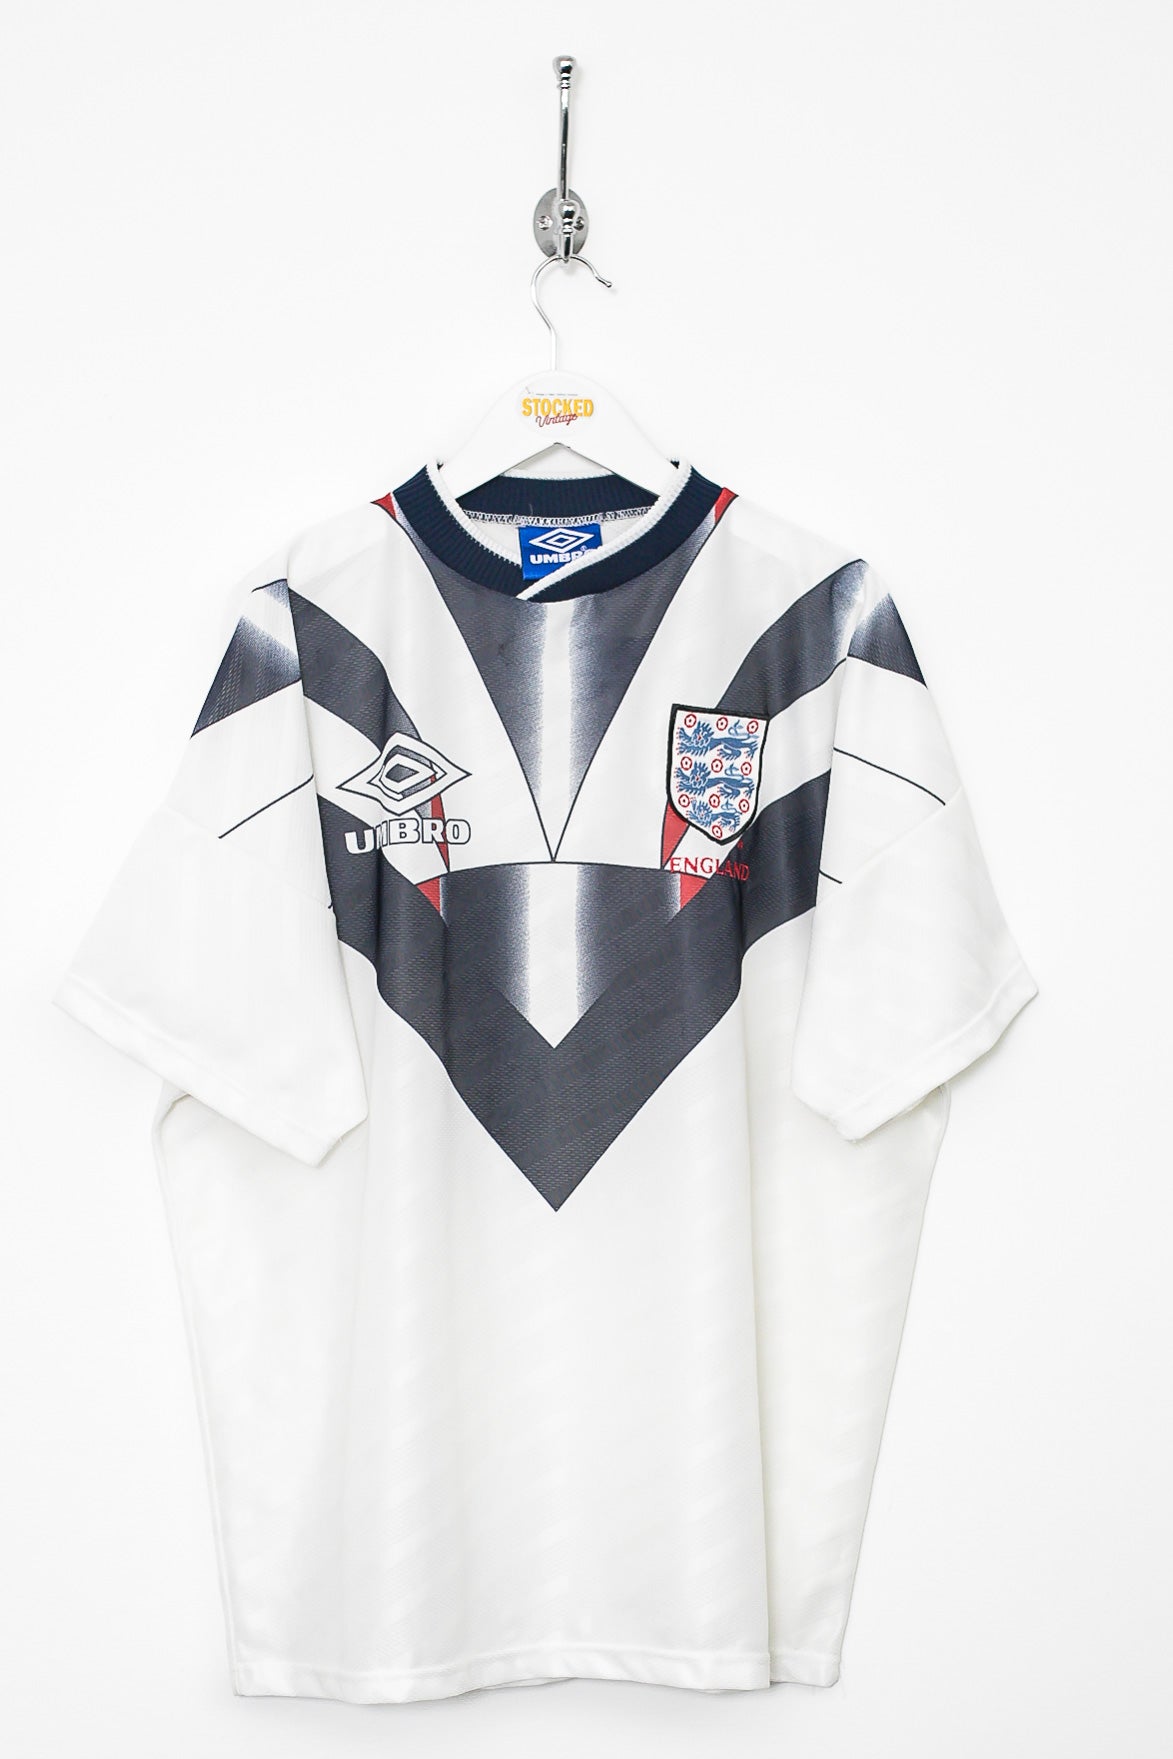 1994/96 Umbro England Training Shirt (L) – Stocked Vintage